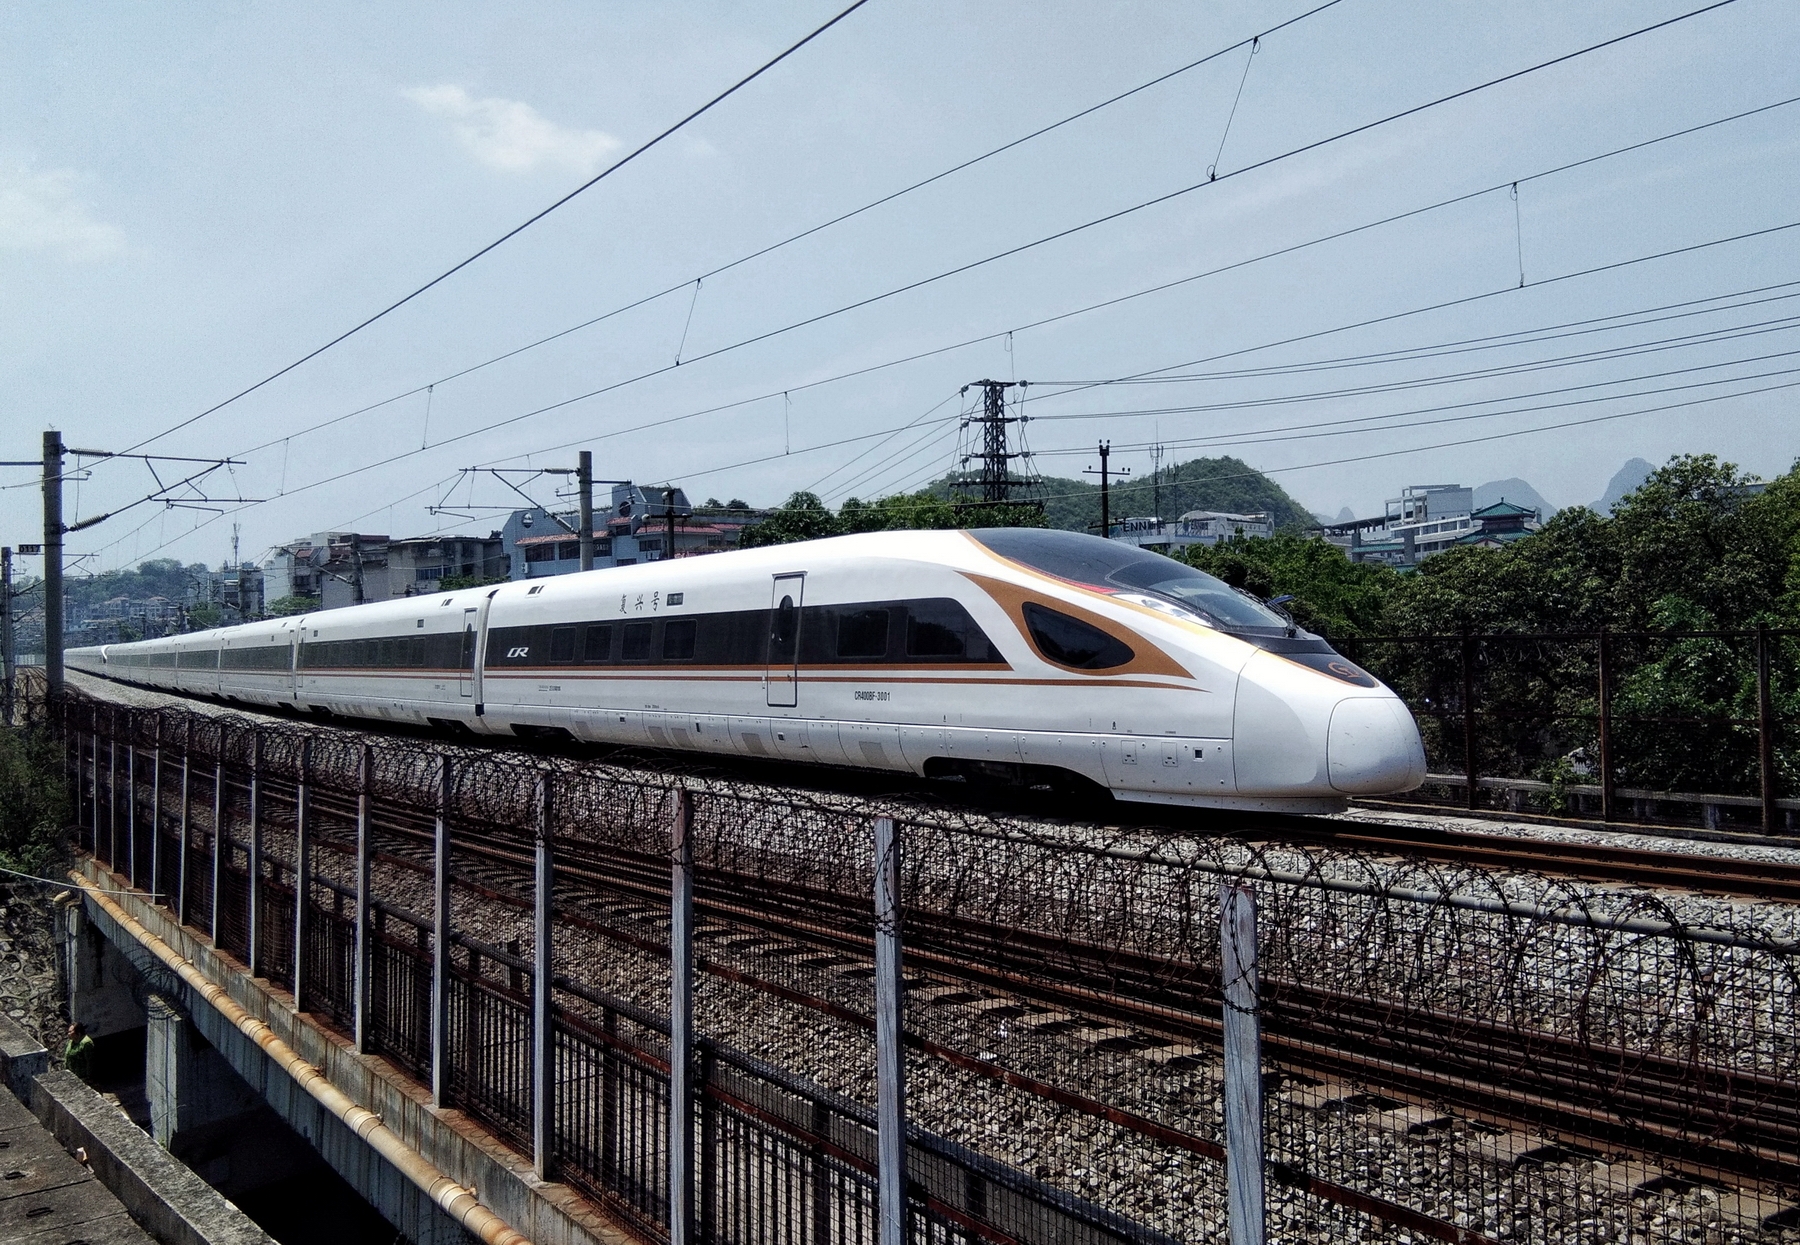 世界首次 京张高铁将实现300-350公里时速自动驾驶-高铁,自动驾驶,京张高铁 ——快科技(驱动之家旗下媒体)--科技改变未来